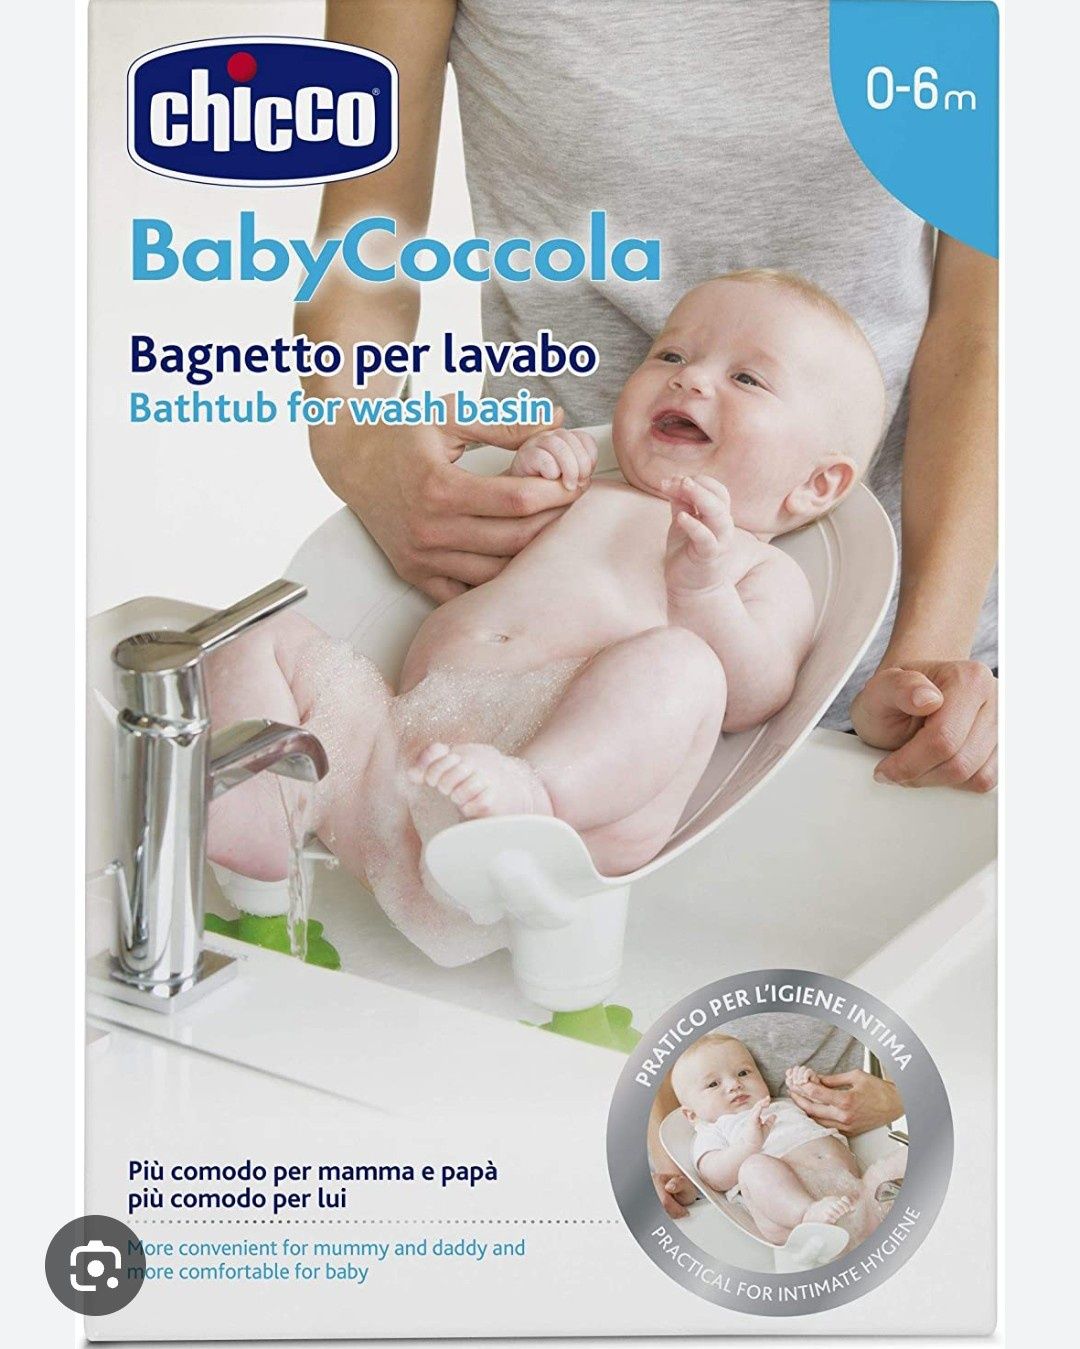 Vendo Chicco baby coccola - banheira para lavatório/bidé ou poliban